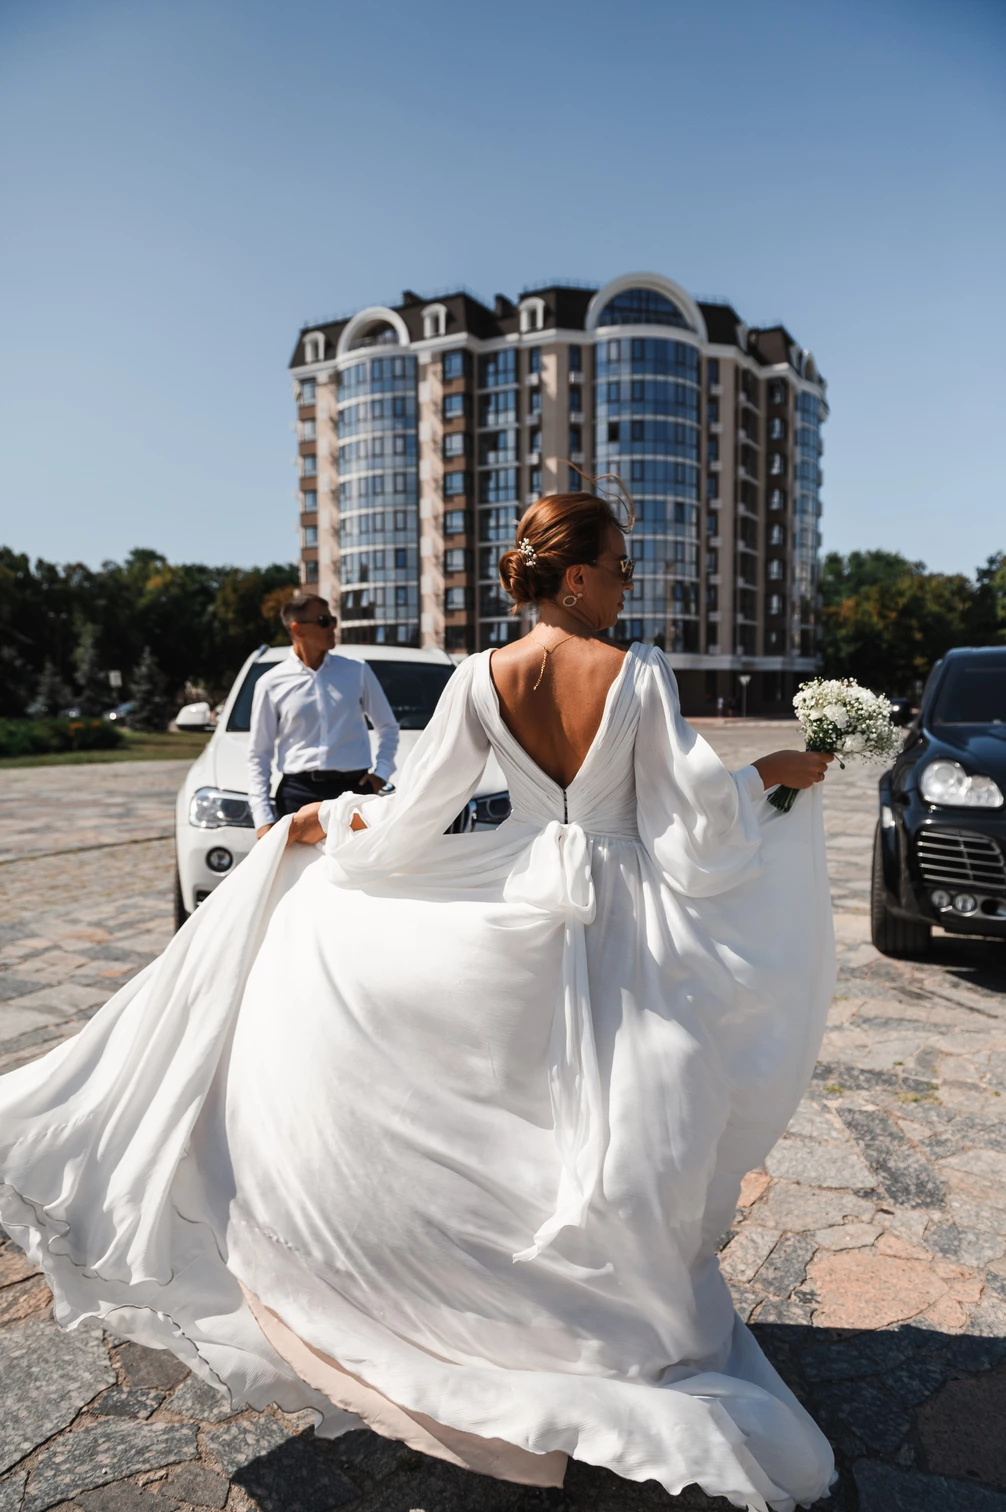 Наречена в білій сукні біжить зі своїм весільним платтям на фоні новобудови в Кременчуці